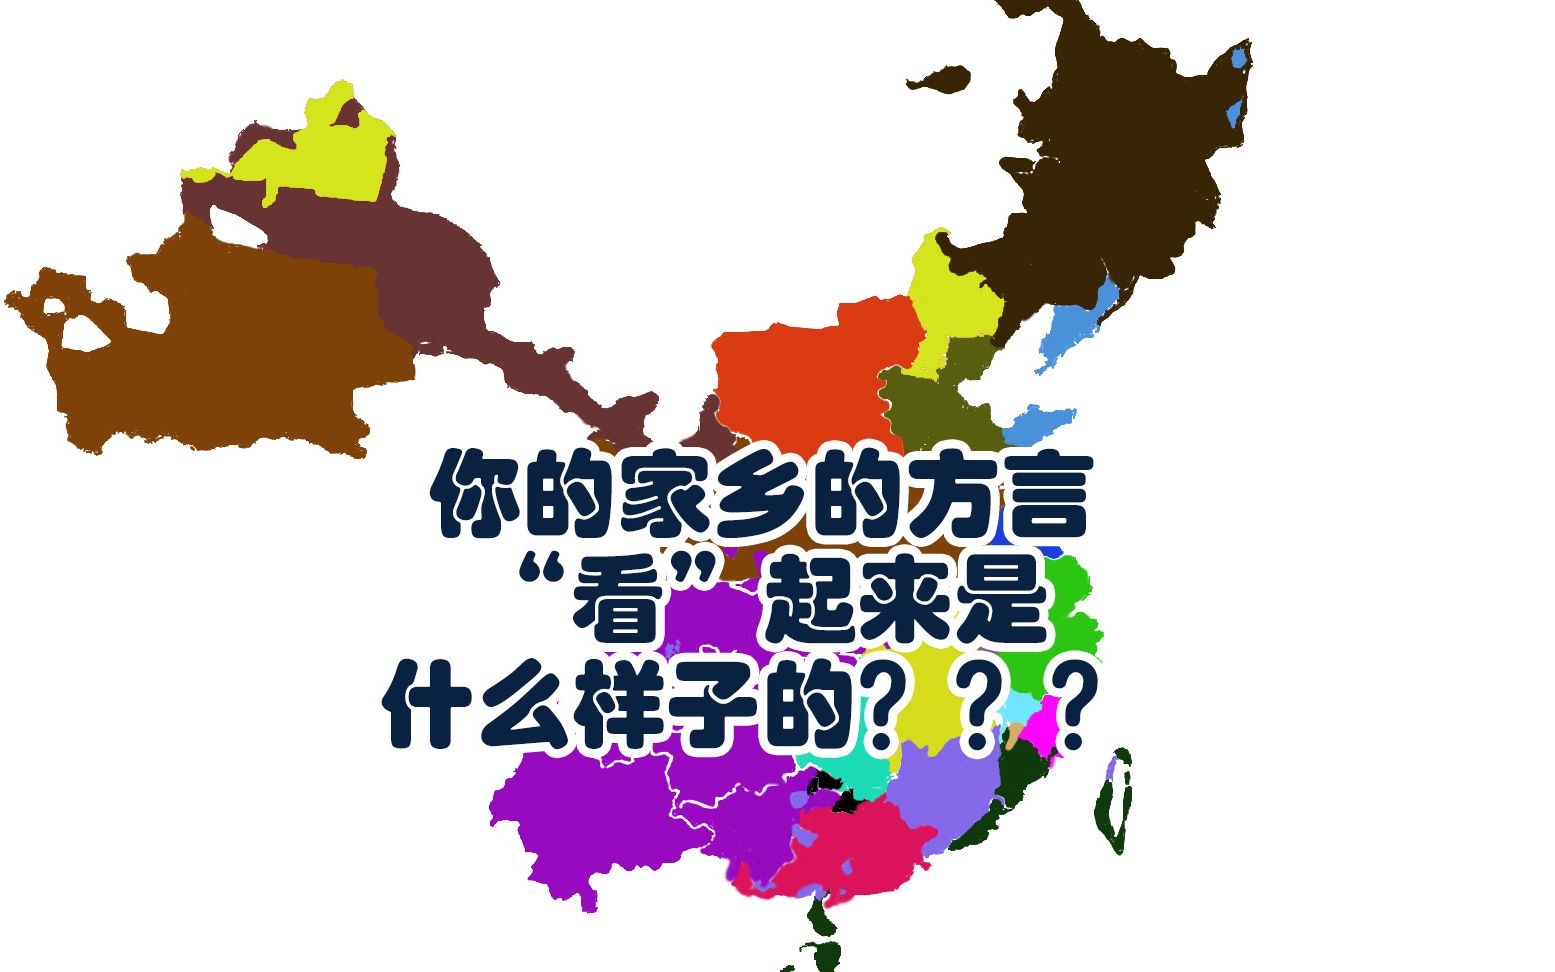 部分省汉语方言地图汇总一 - 知乎